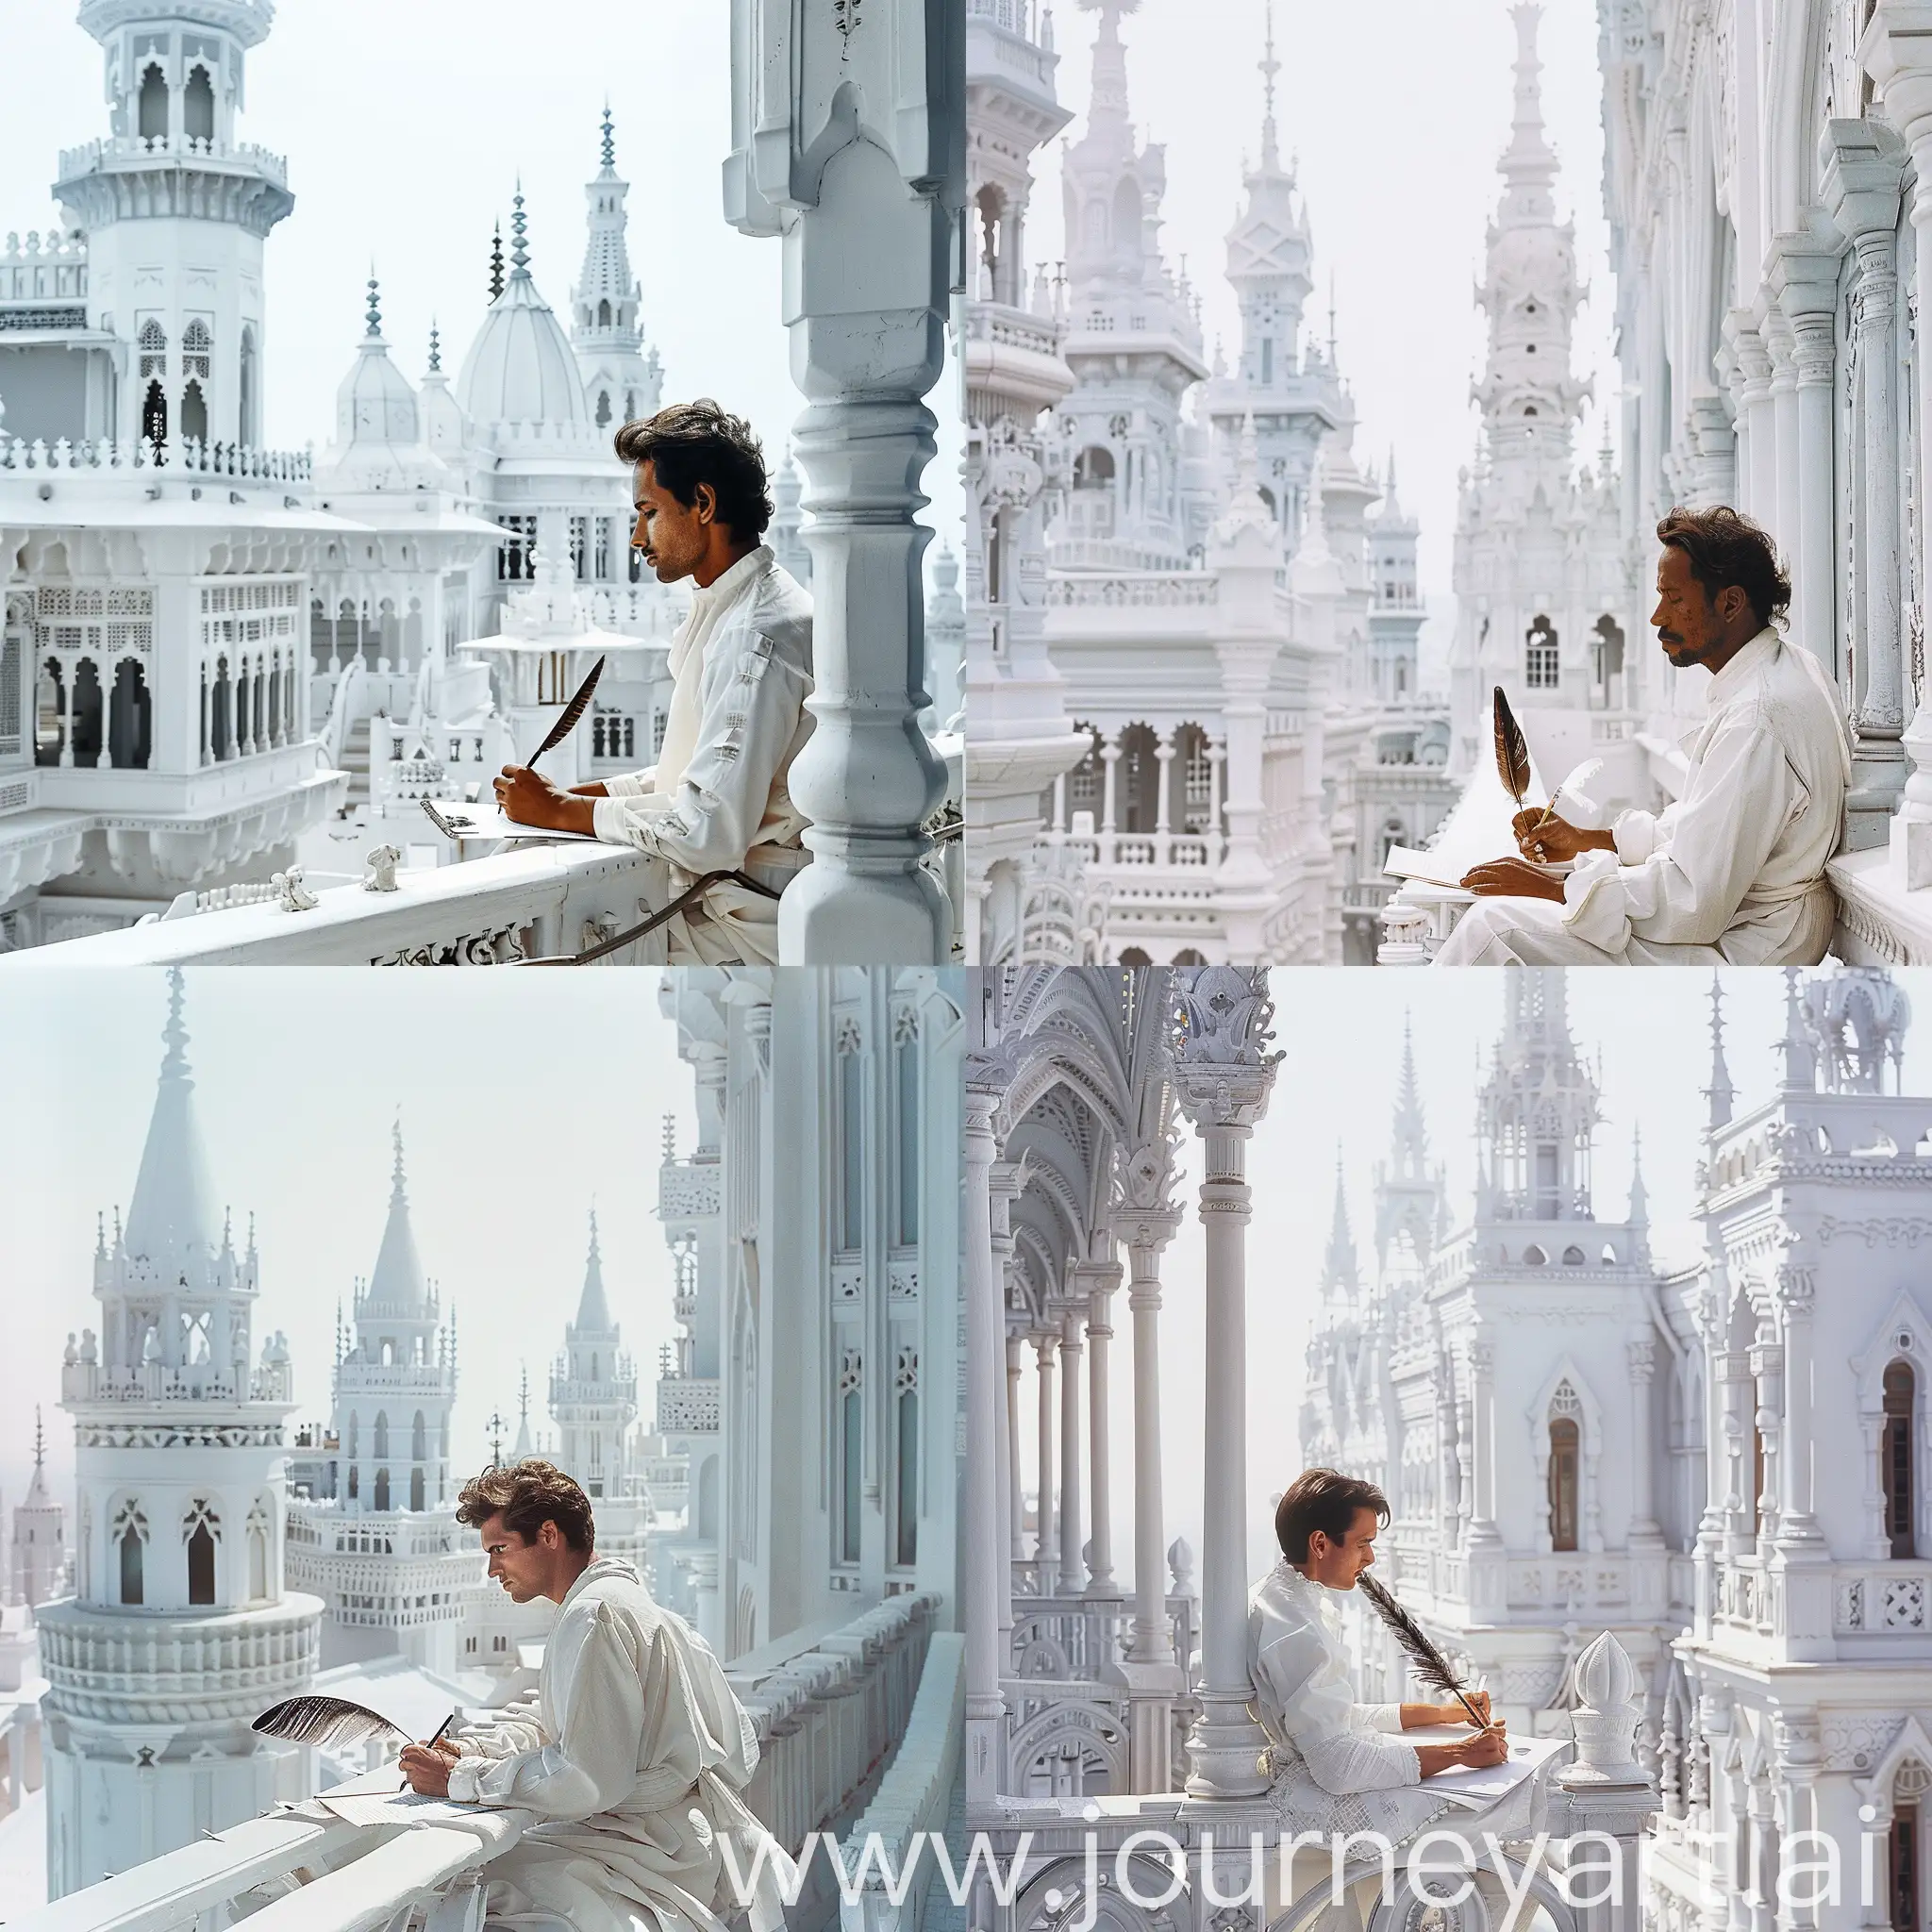 Мужчина (европеоидной расы) в белой одежде сидит и пишет на бумаге перьевой ручкой на балконе одного из зданий белого дворца, вилны также другие белые здания со шпилями, небо бело-синее сплошное